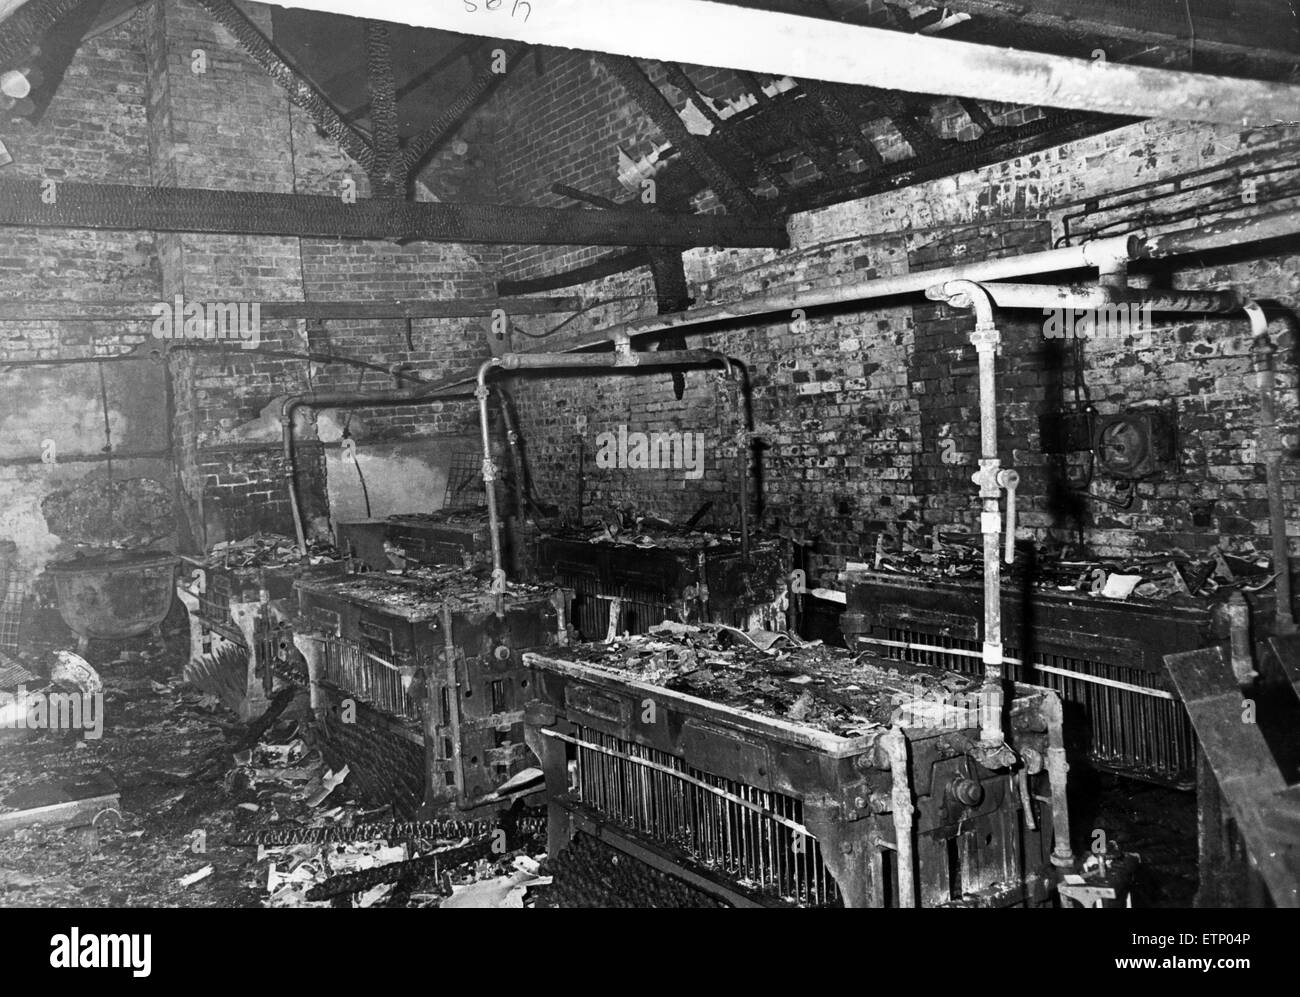 Schieße auf Kerzenfabrik im Besitz von Mawson, Clarkson Company, North Road, Middlesbrough, 20. Dezember 1968. Stockfoto